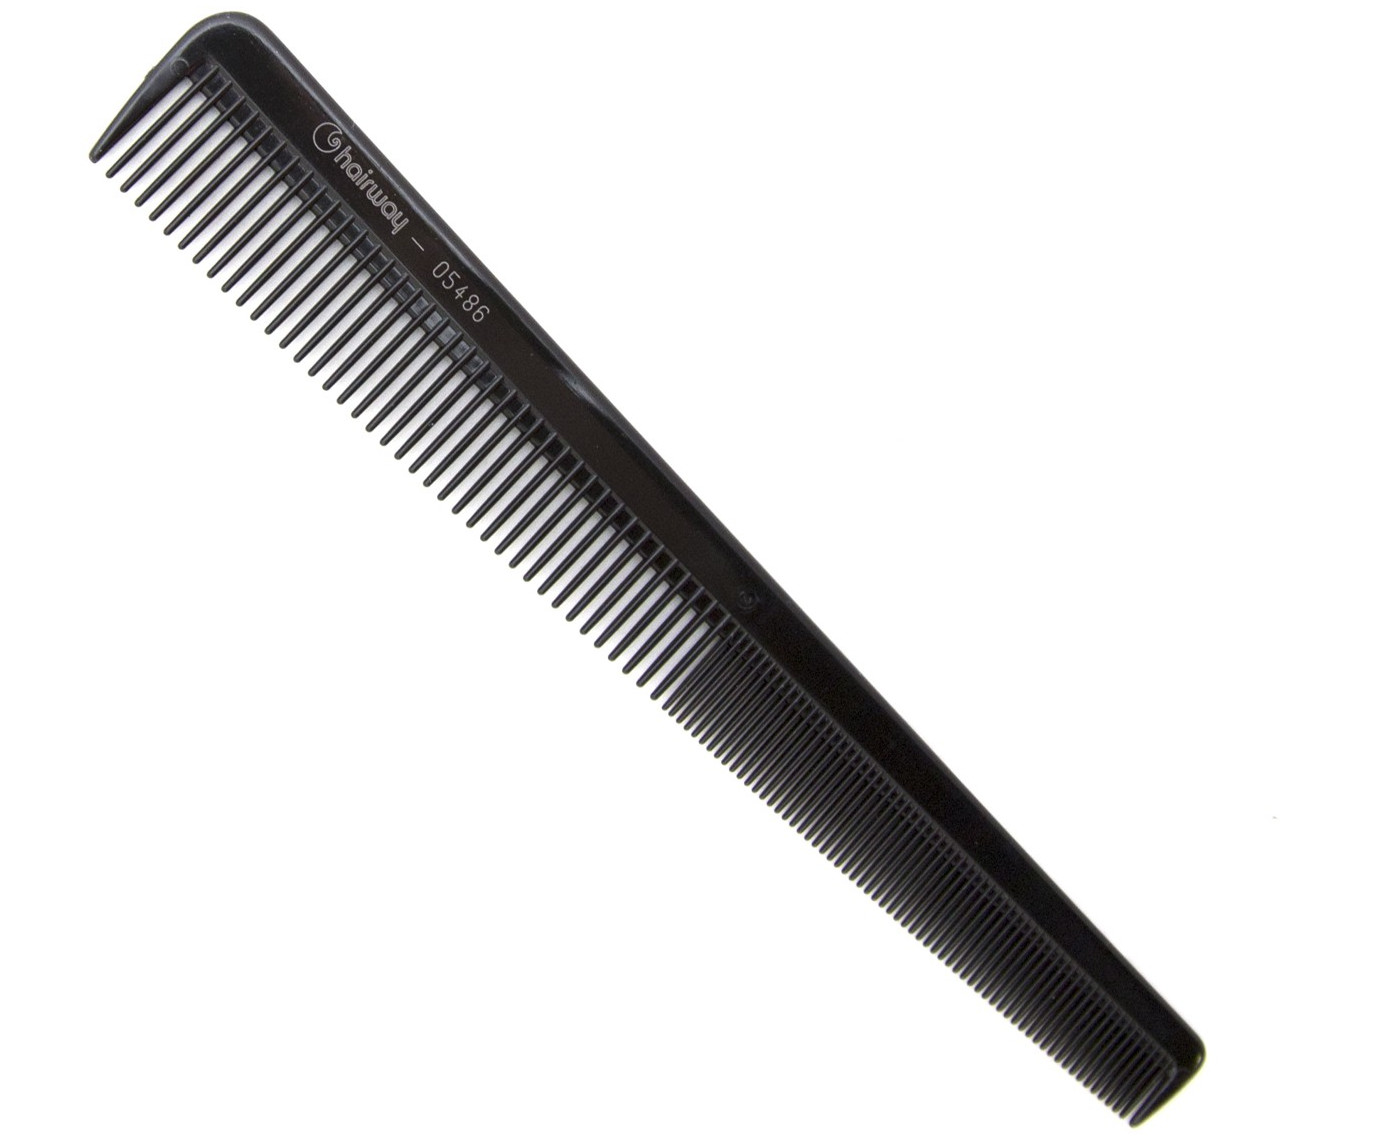 Hřeben na stříhání vlasů Hairway Excellence 05486 - 180 mm